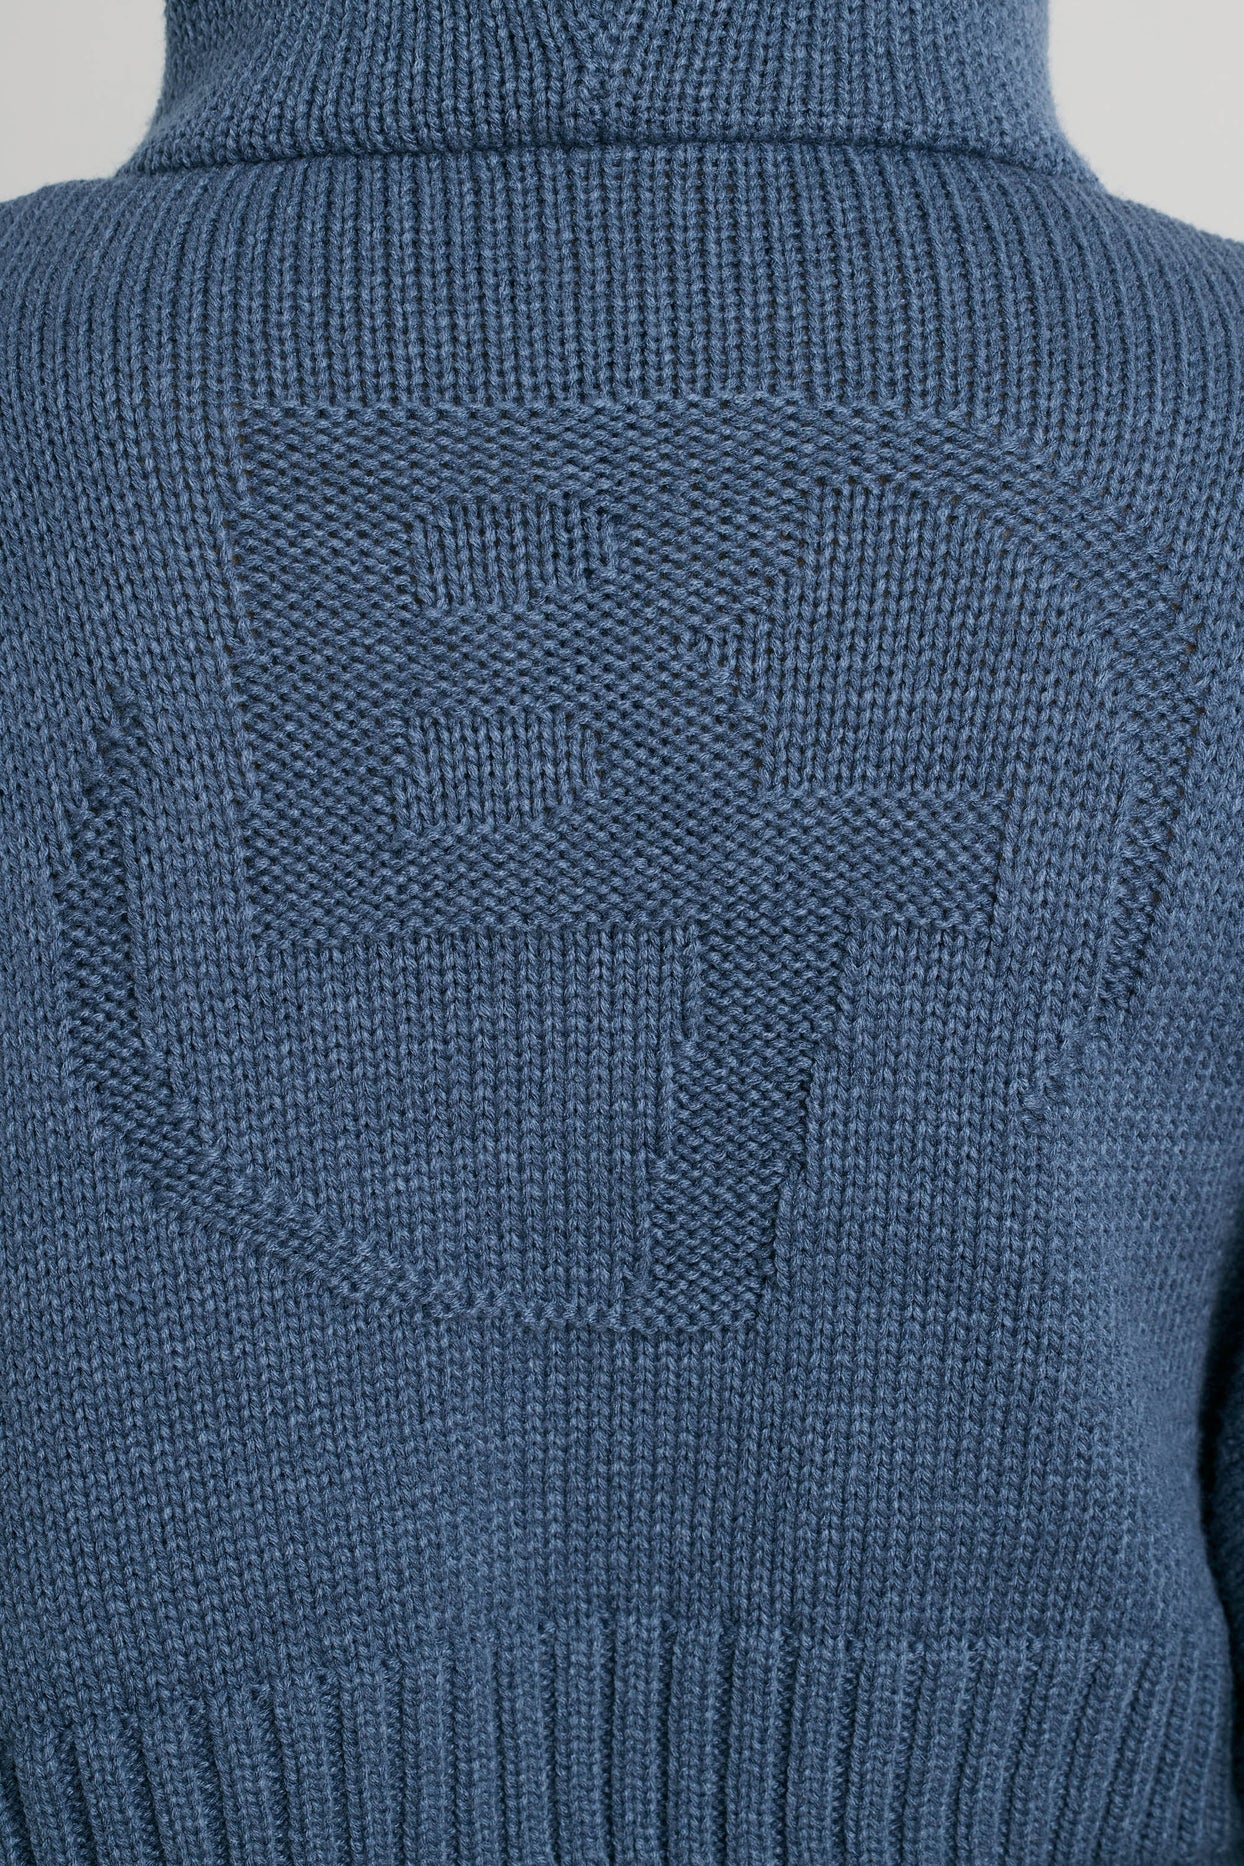 Sudadera con capucha corta de punto grueso con cremallera en azul marino lavado